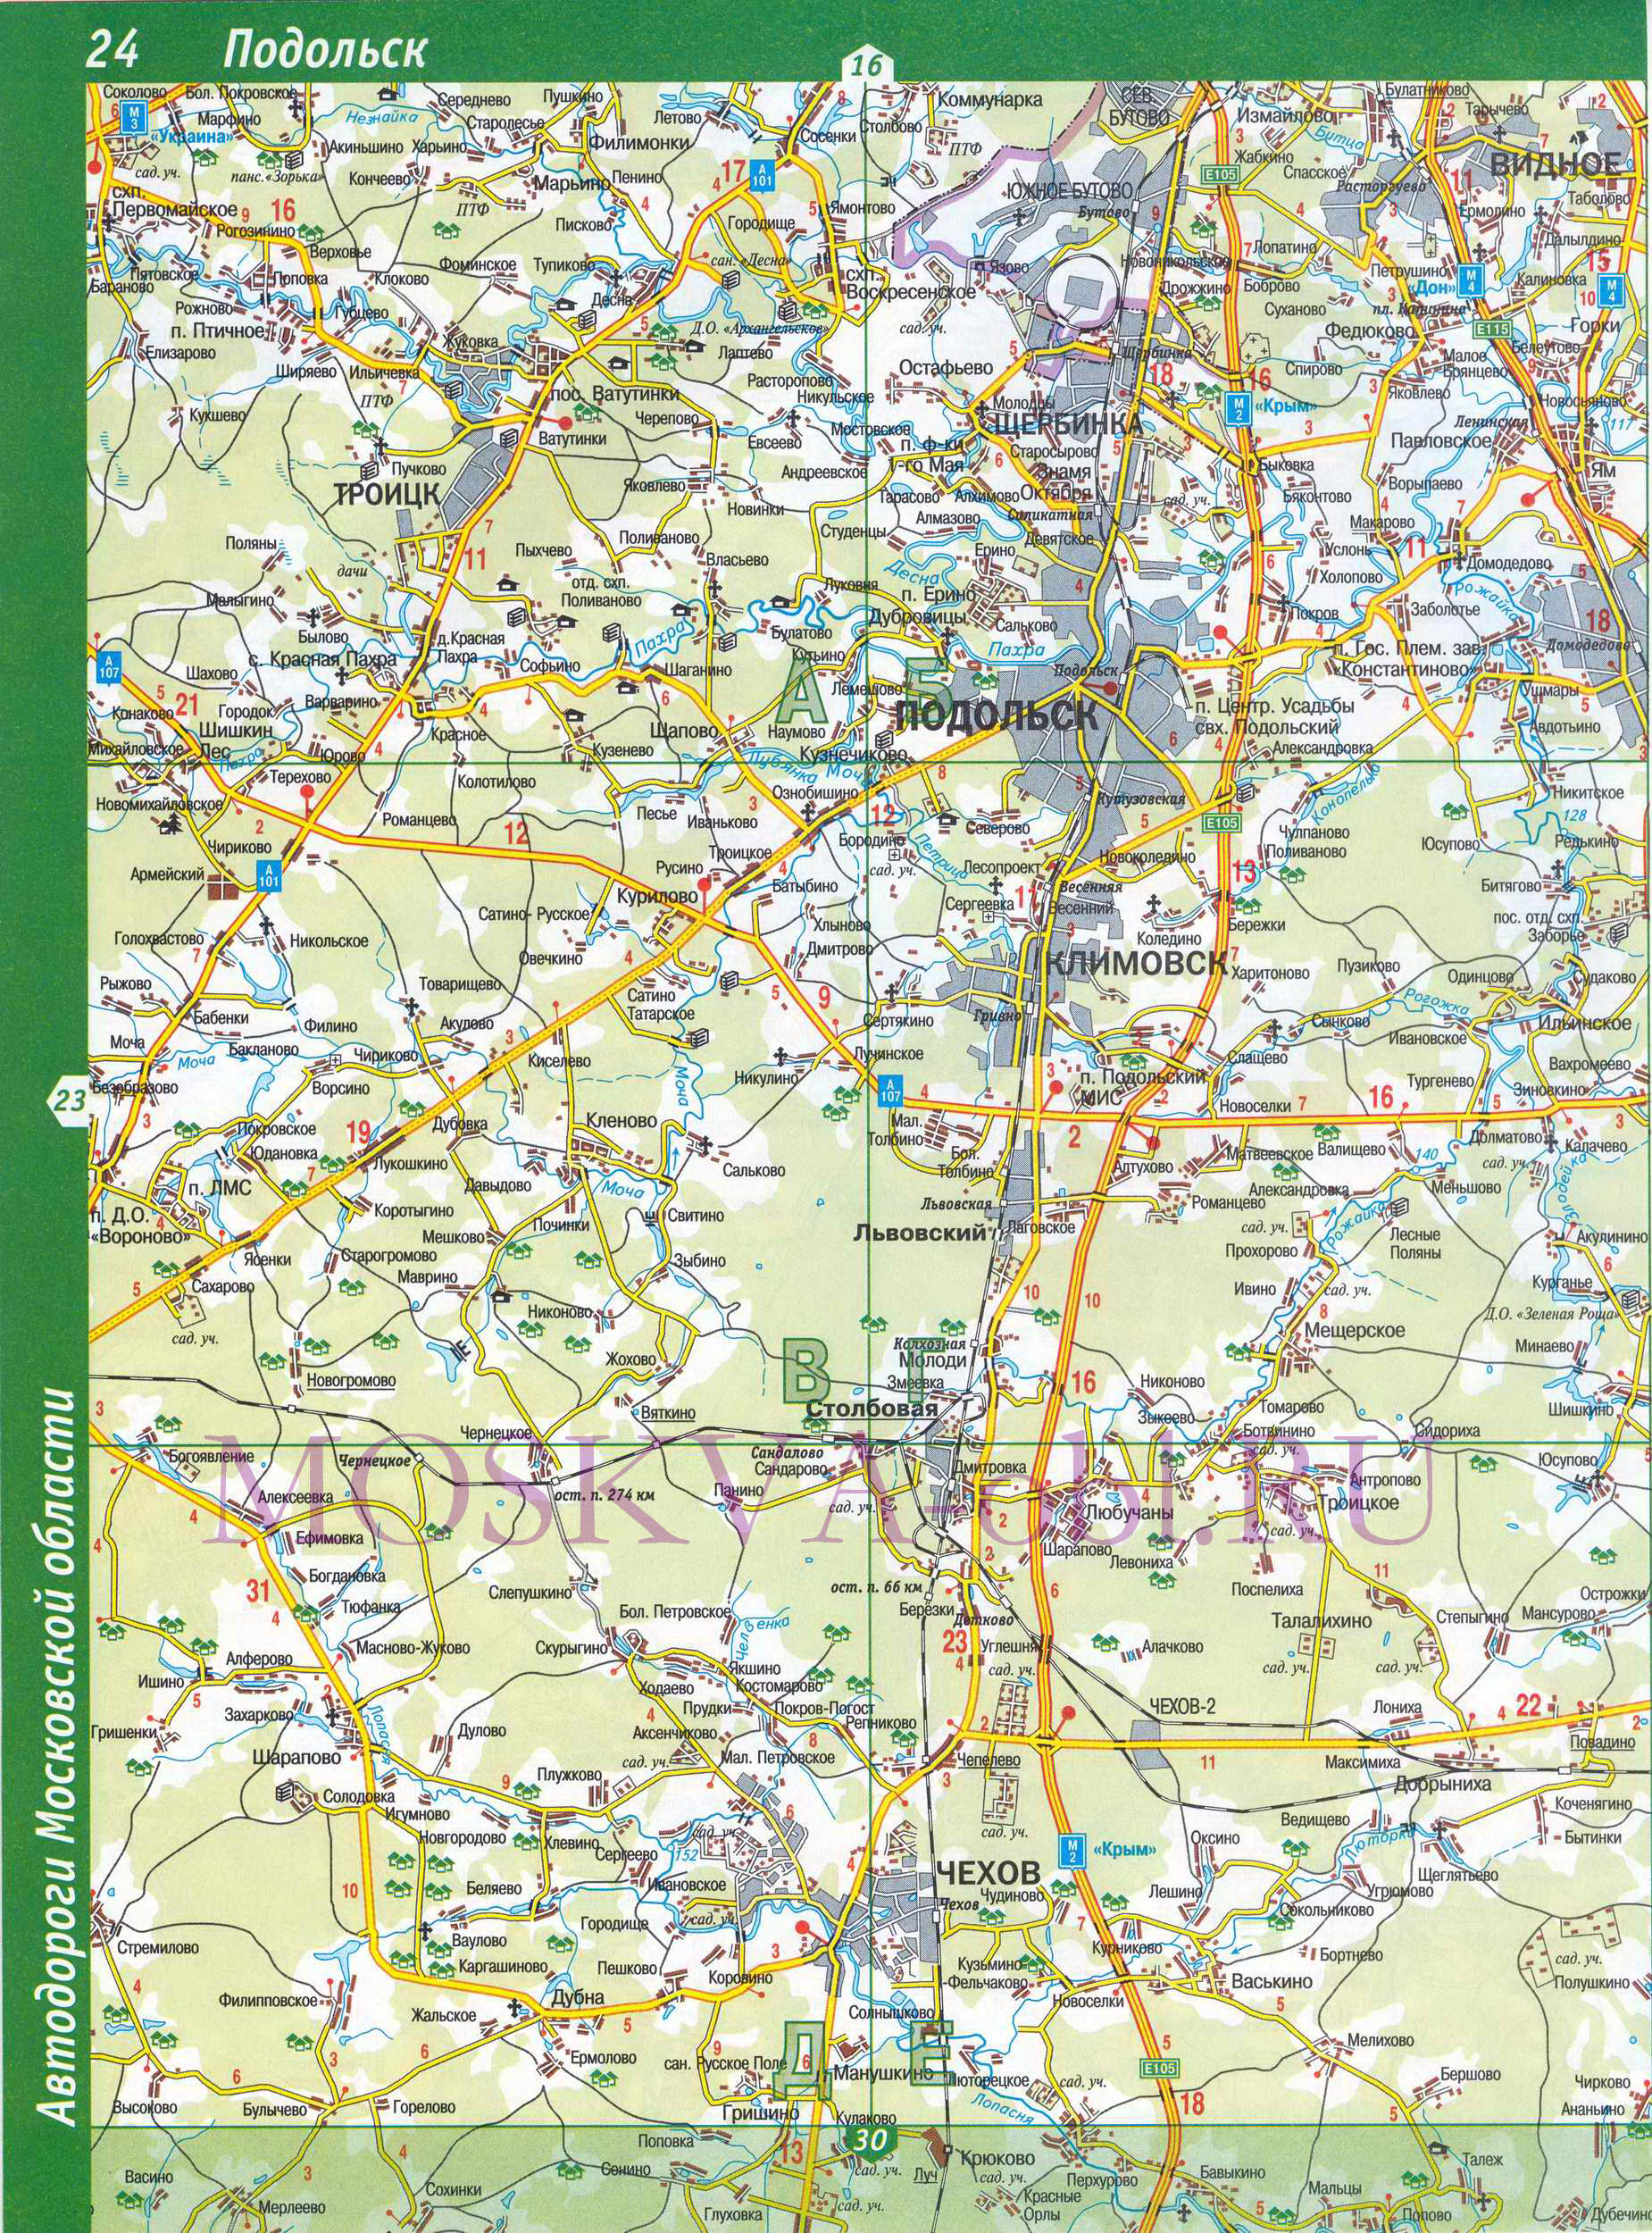 Карта Московской области. Московская область - подробная топографическая карта масштаба 1см:2км, C2 - 